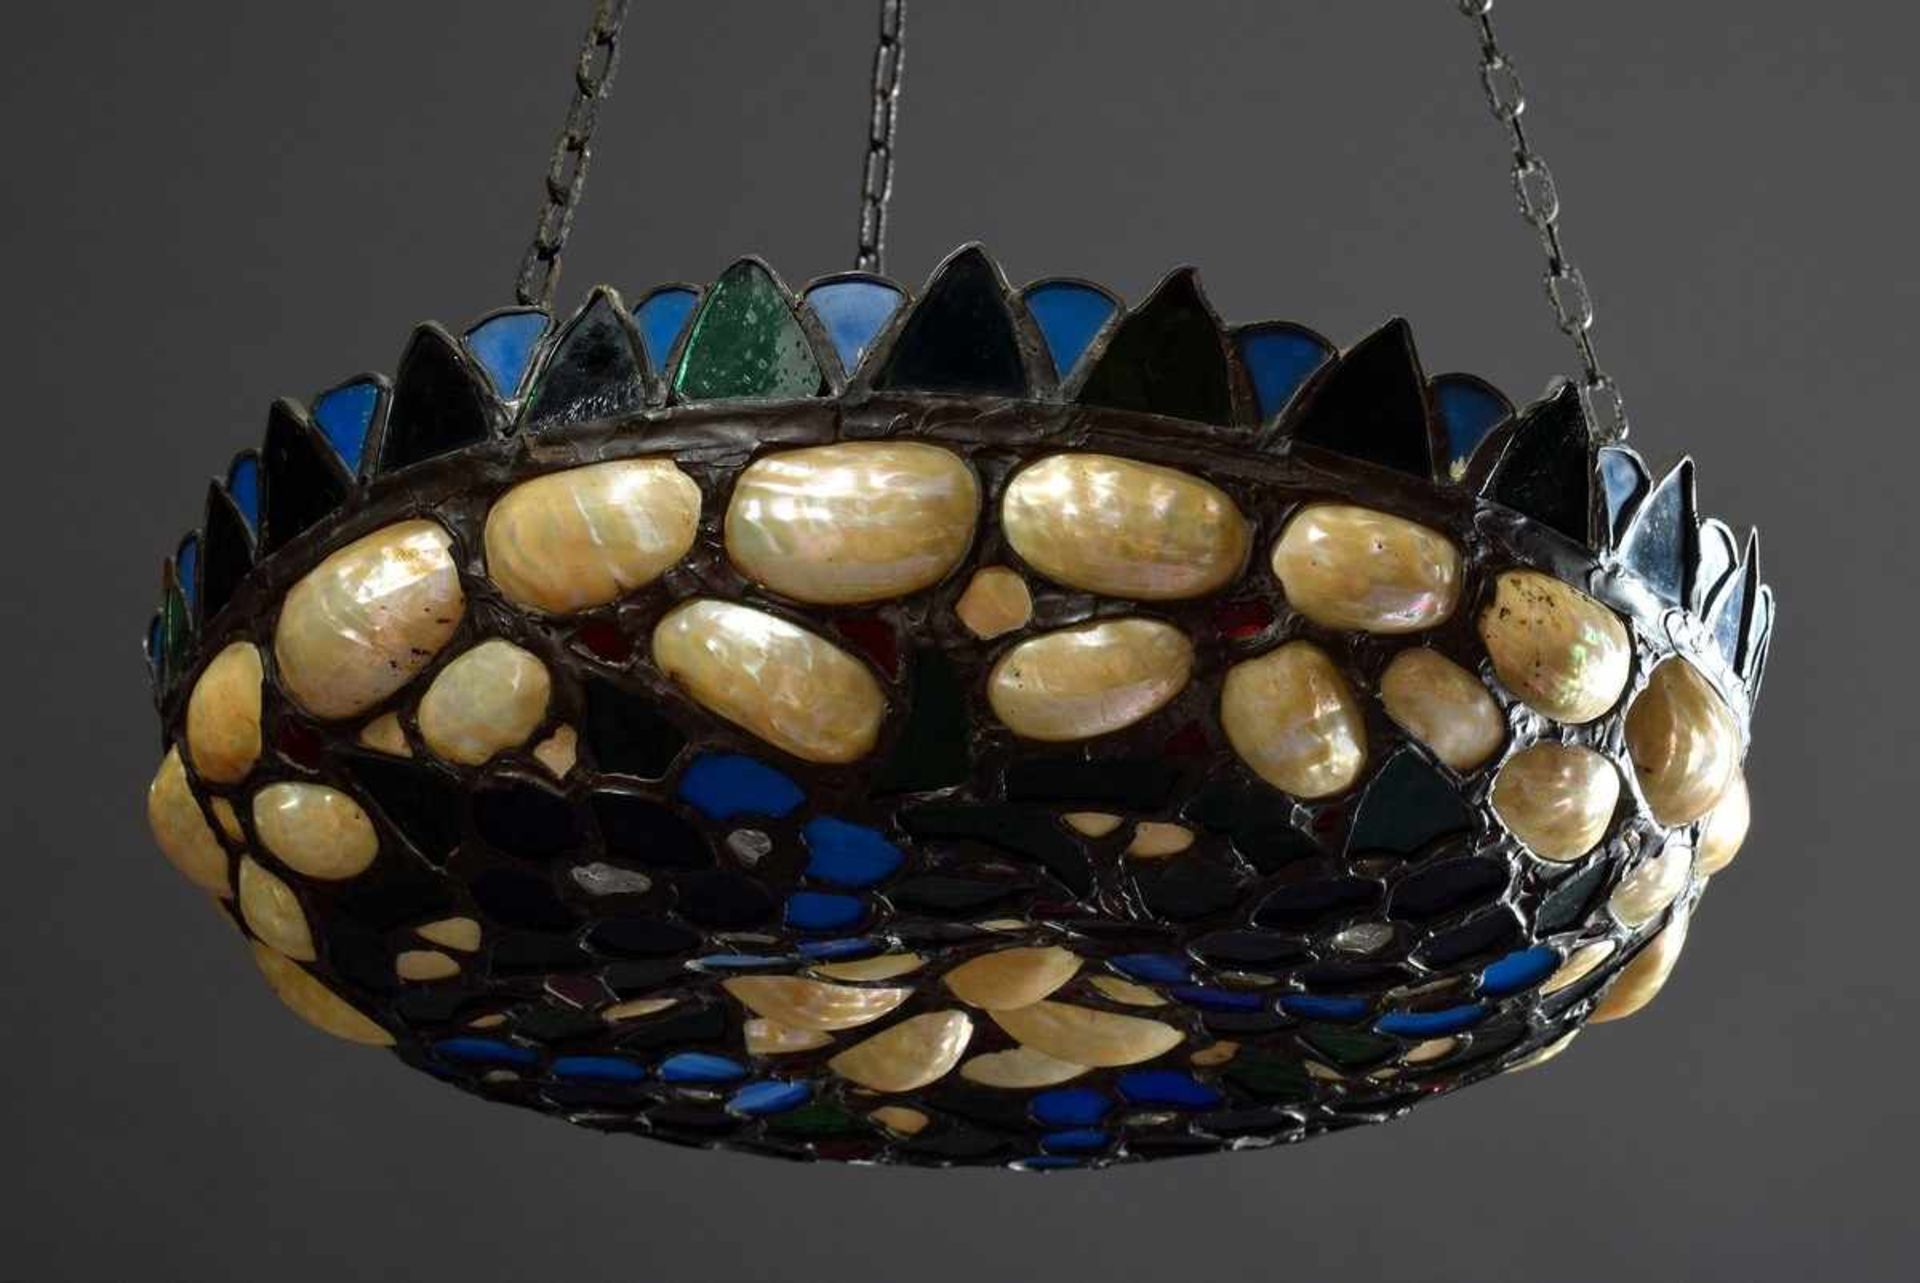 Jugendstil Deckenlampe mit buntem Glas und Muscheln in Bleiverglasung, Ø 39cmArt Nouveau ceiling - Bild 2 aus 3